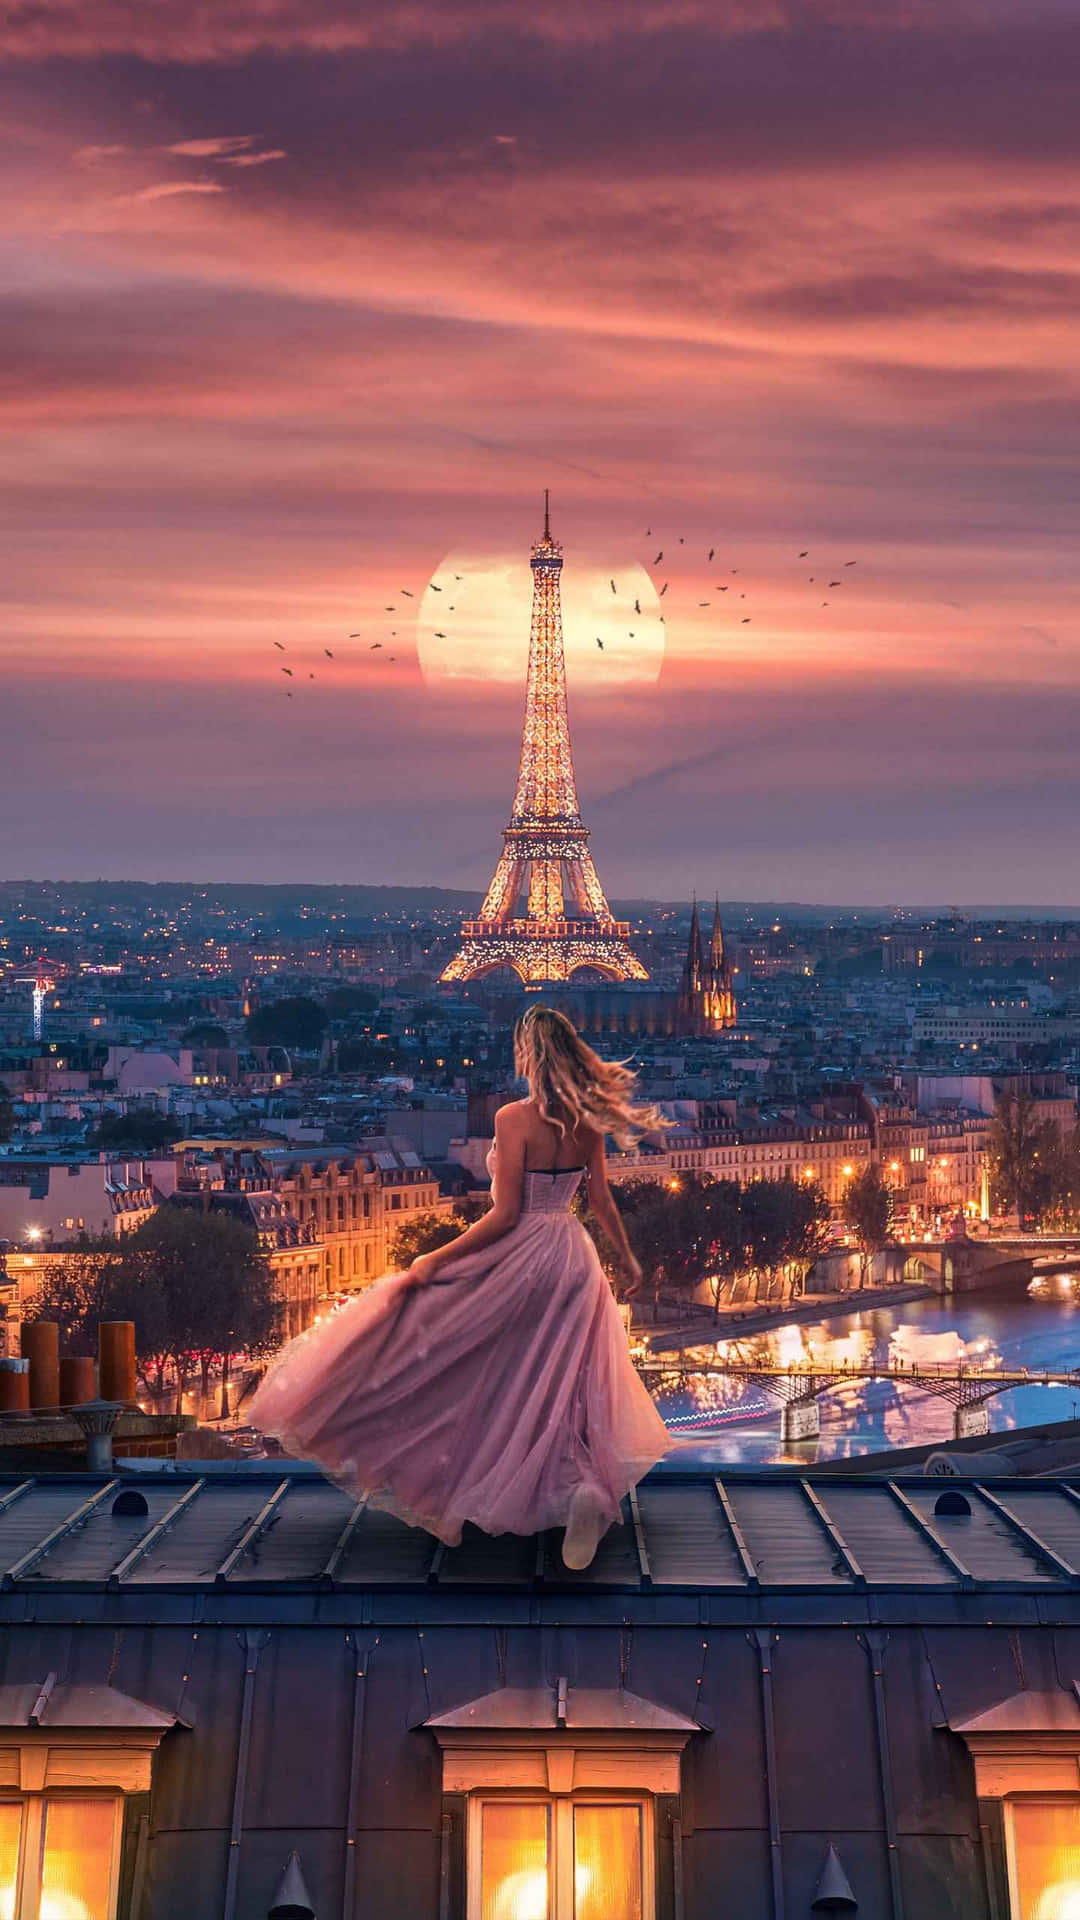 Eiffeltårnetstår Majestætisk Over Den Blomstrende By Paris.